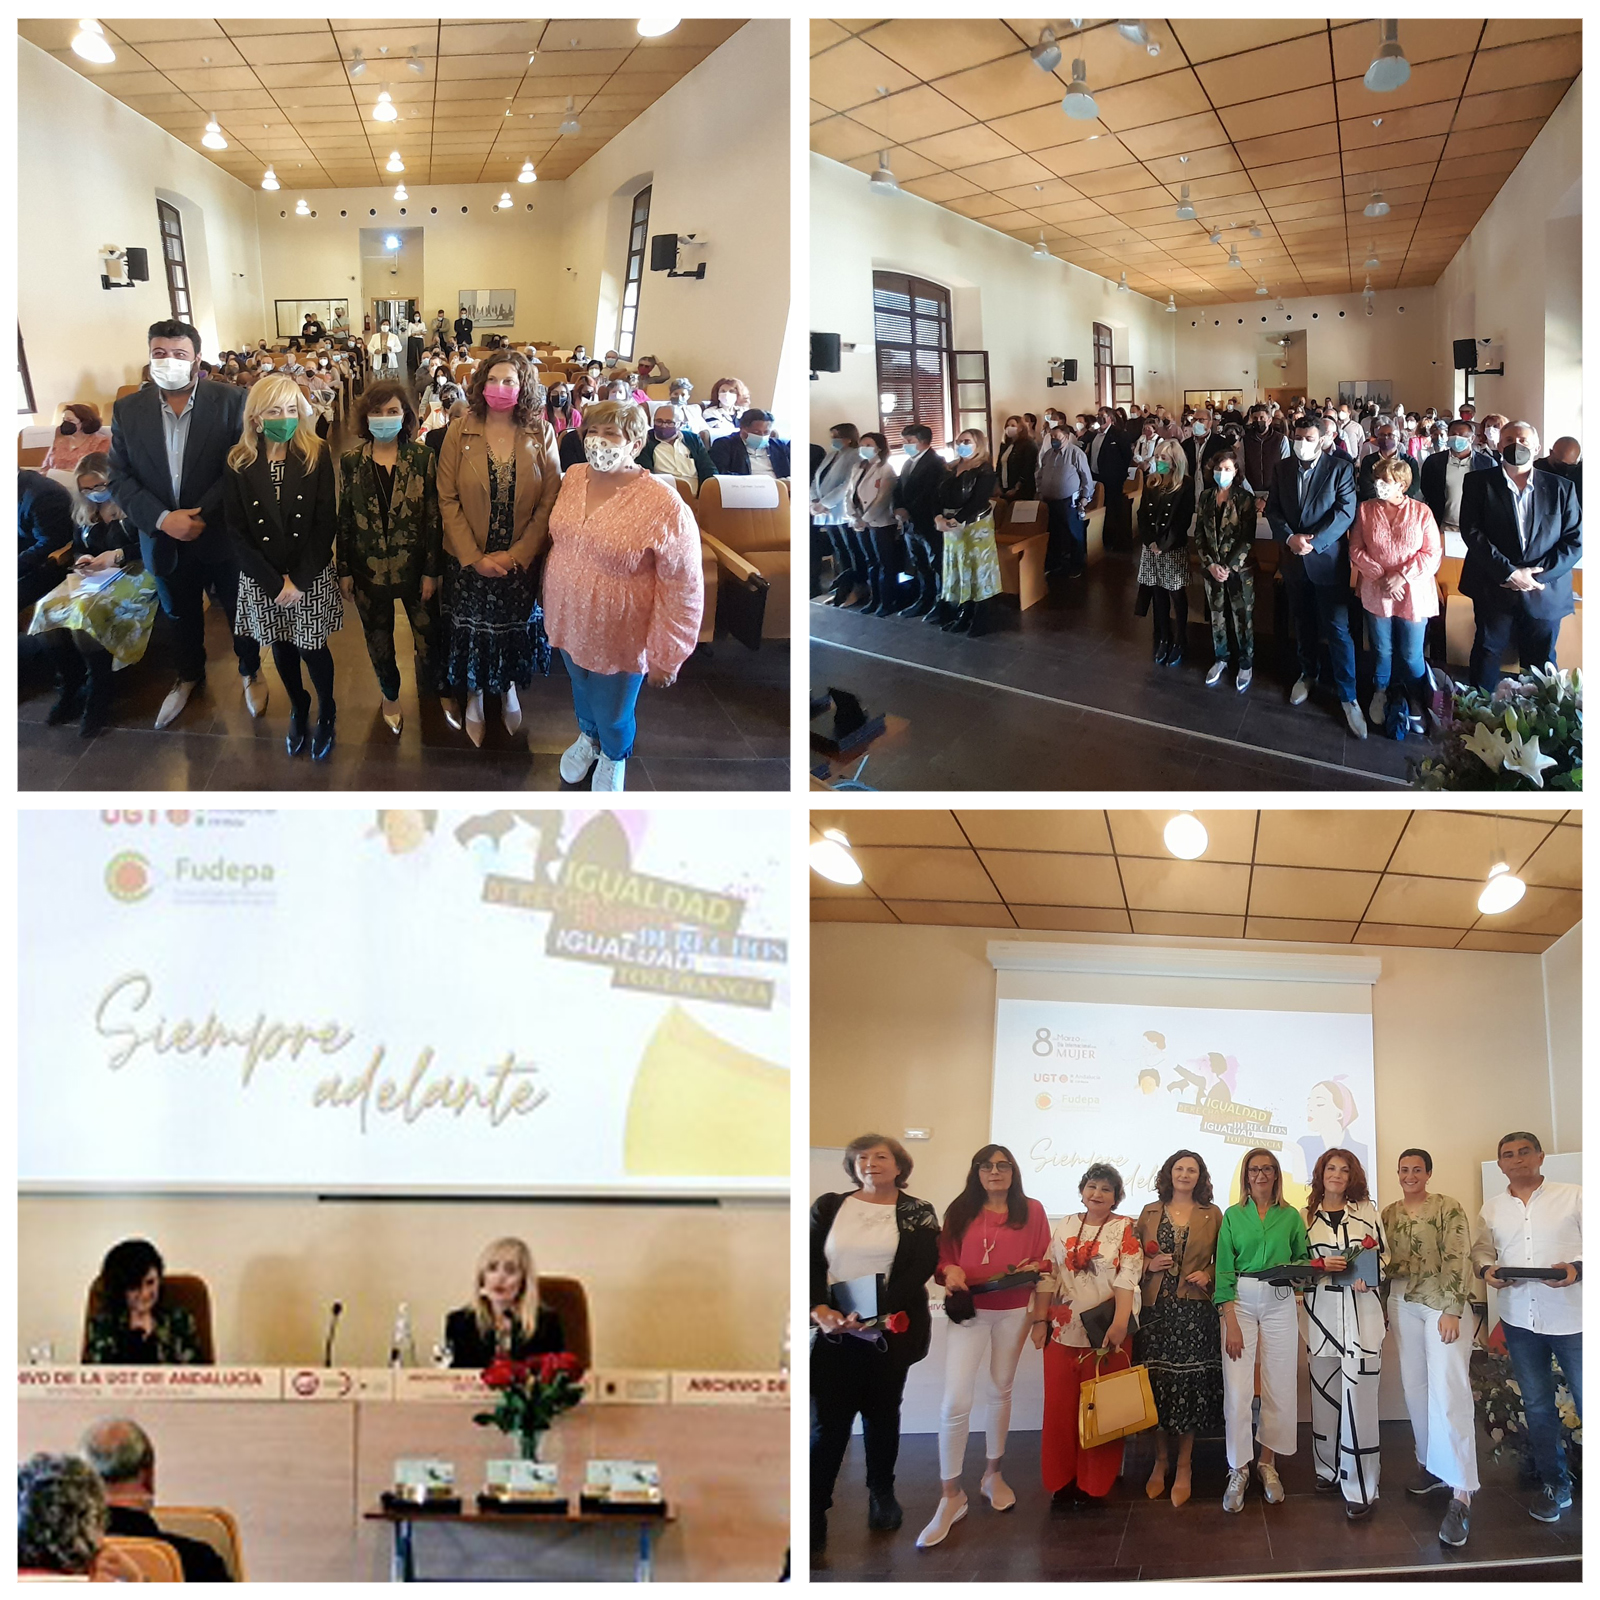 El salón de actos de Fudepa acoge la jornada de igualdad “Siempre adelante”, organizada por UGT Córdoba y en la que han participado Carmen Castilla y Carmen Calvo